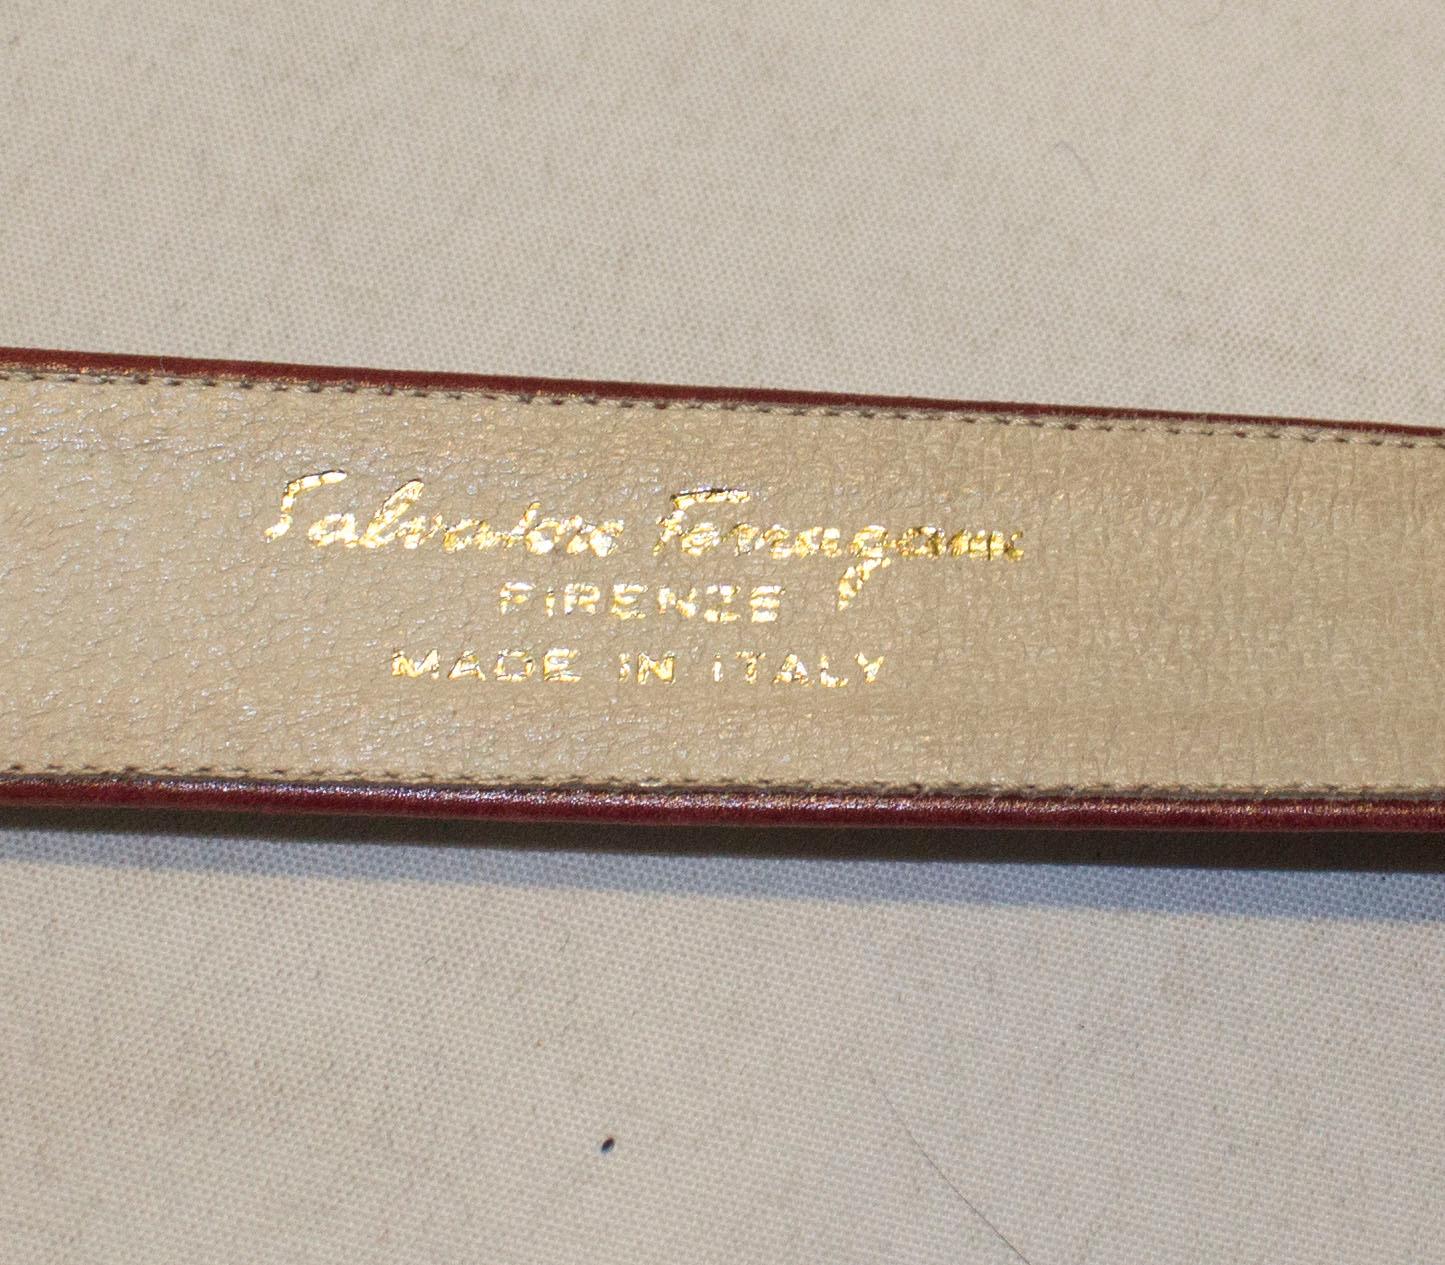 Une ceinture vintage chic de Ferragamo. La ceinture est en cuir bordeaux avec une jolie boucle dorée. Il y a trois trous, mais l'espace est suffisant pour en ajouter d'autres si nécessaire.
Longueur 31'', hauteur 1 1/4''.